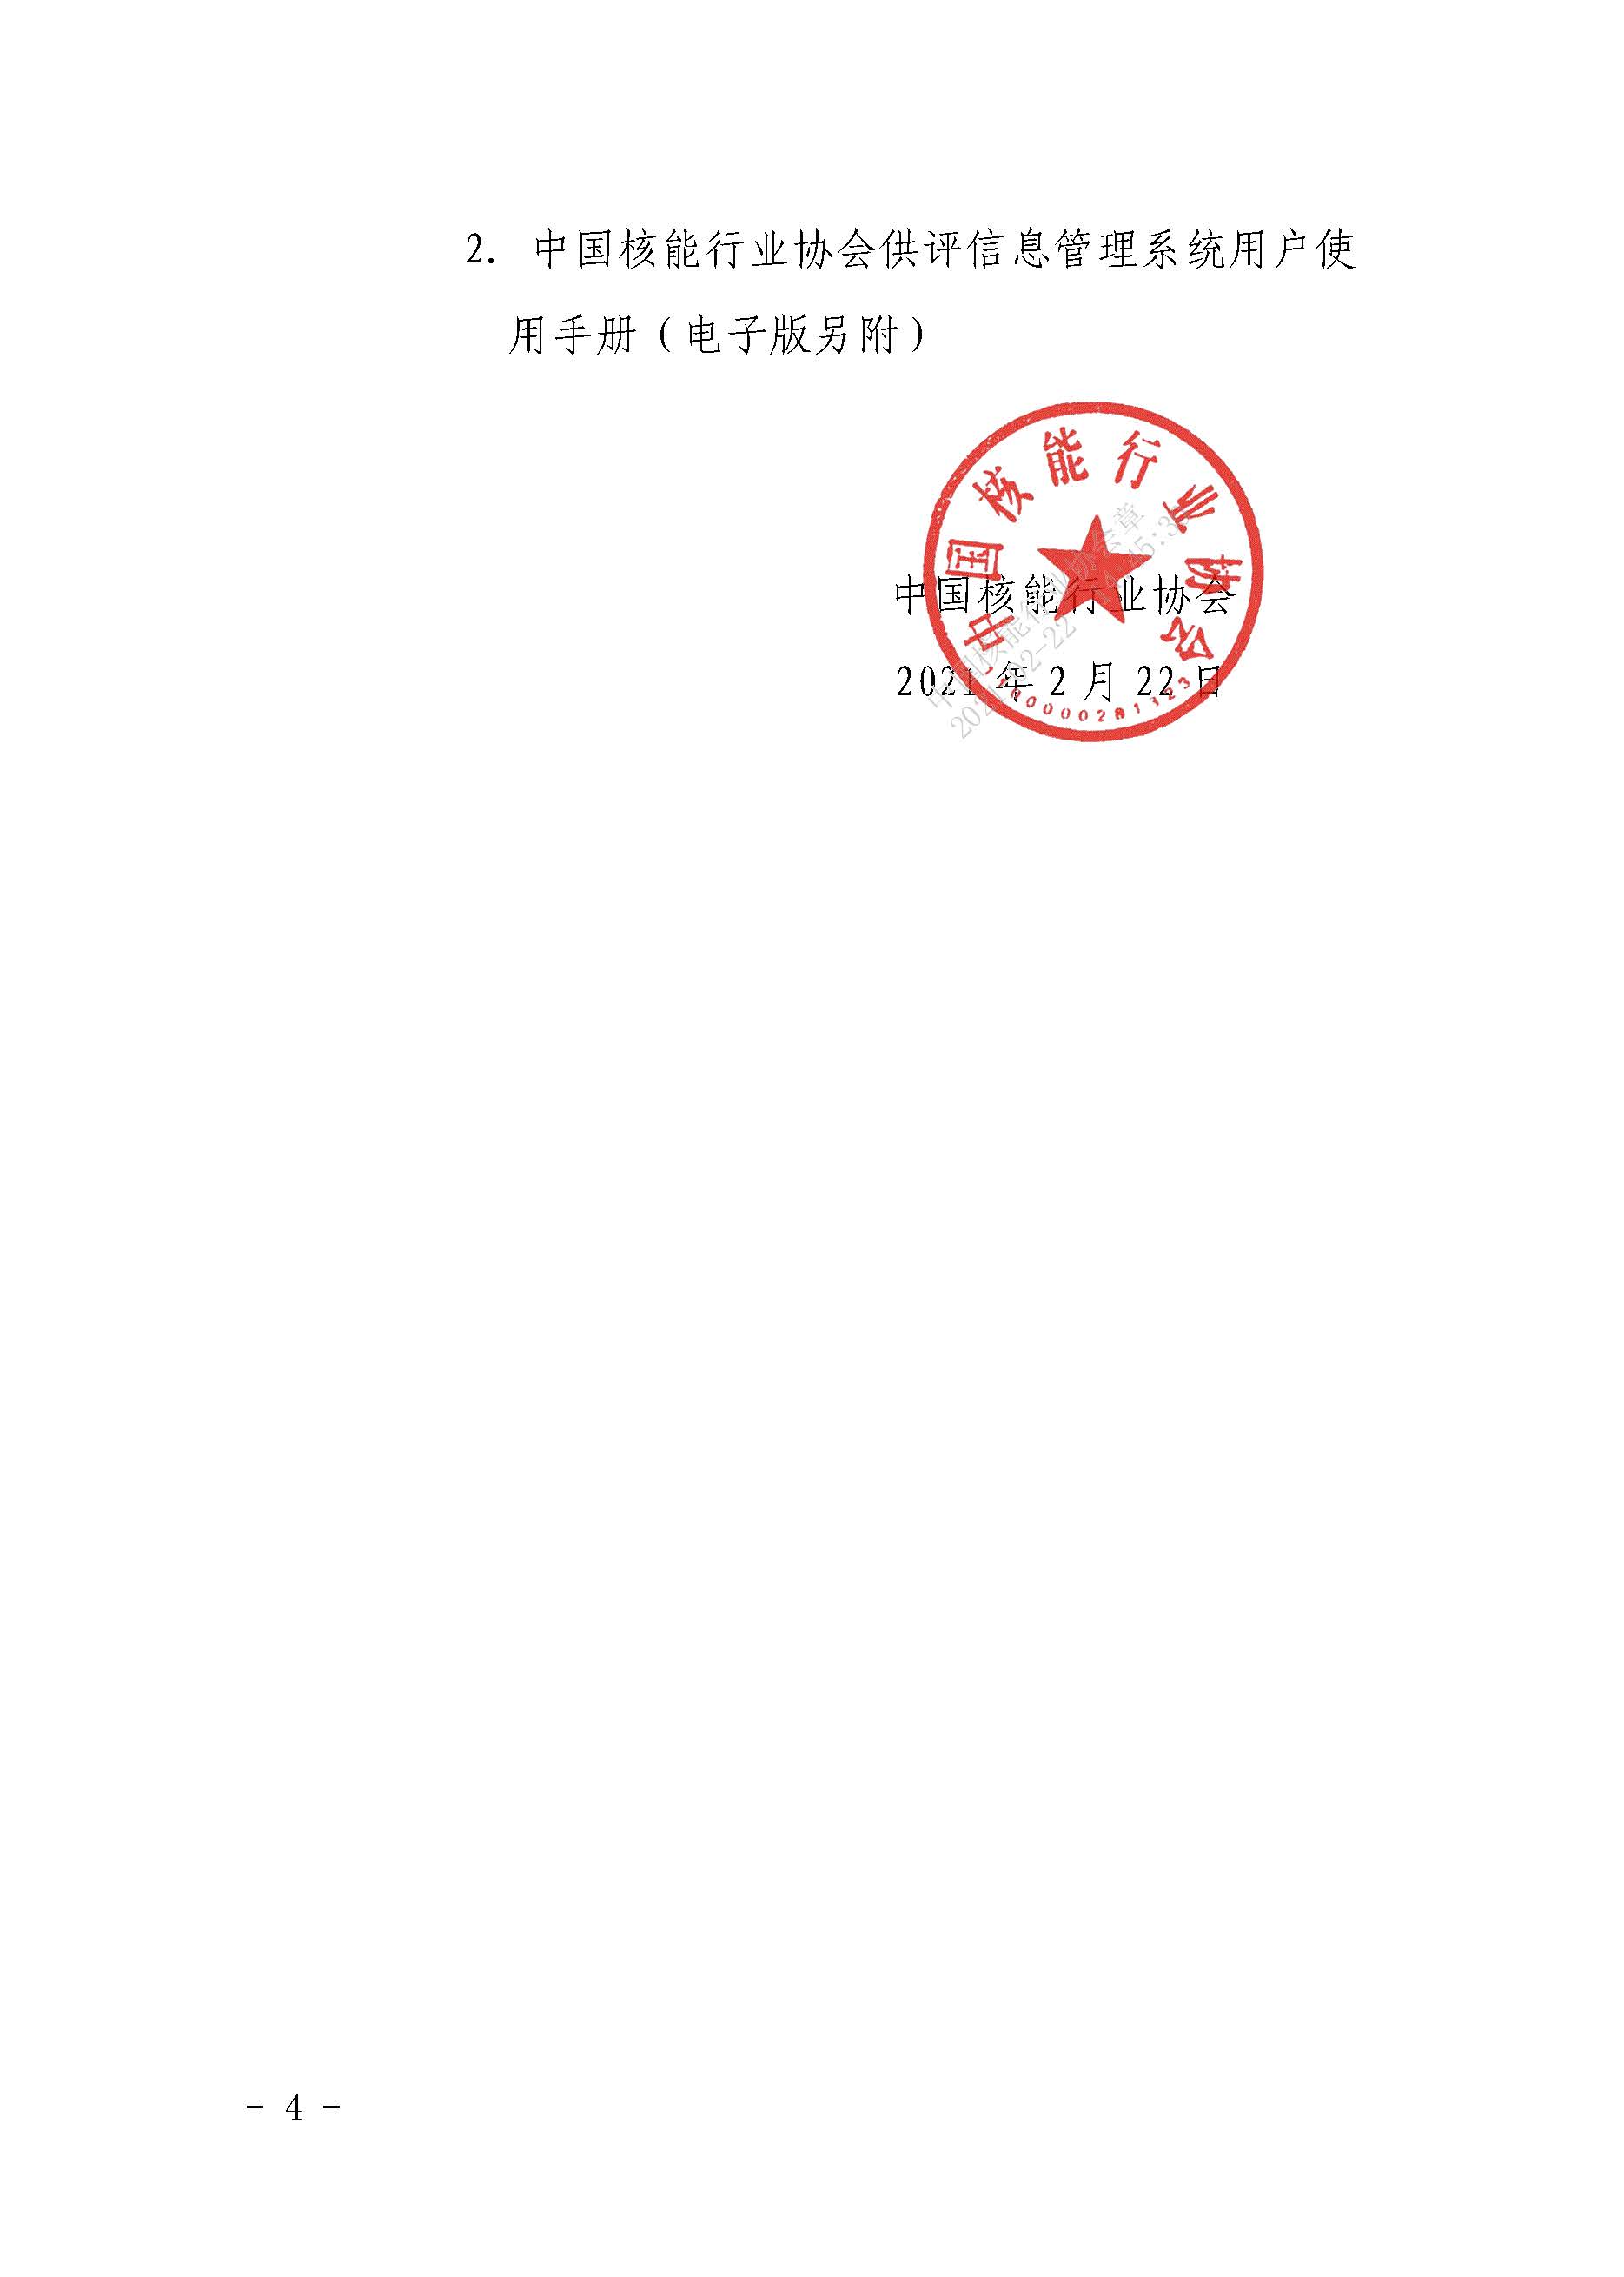 关于中国核能行业协会供应商评价信息系统上线试运行的通知_页面_04.jpg